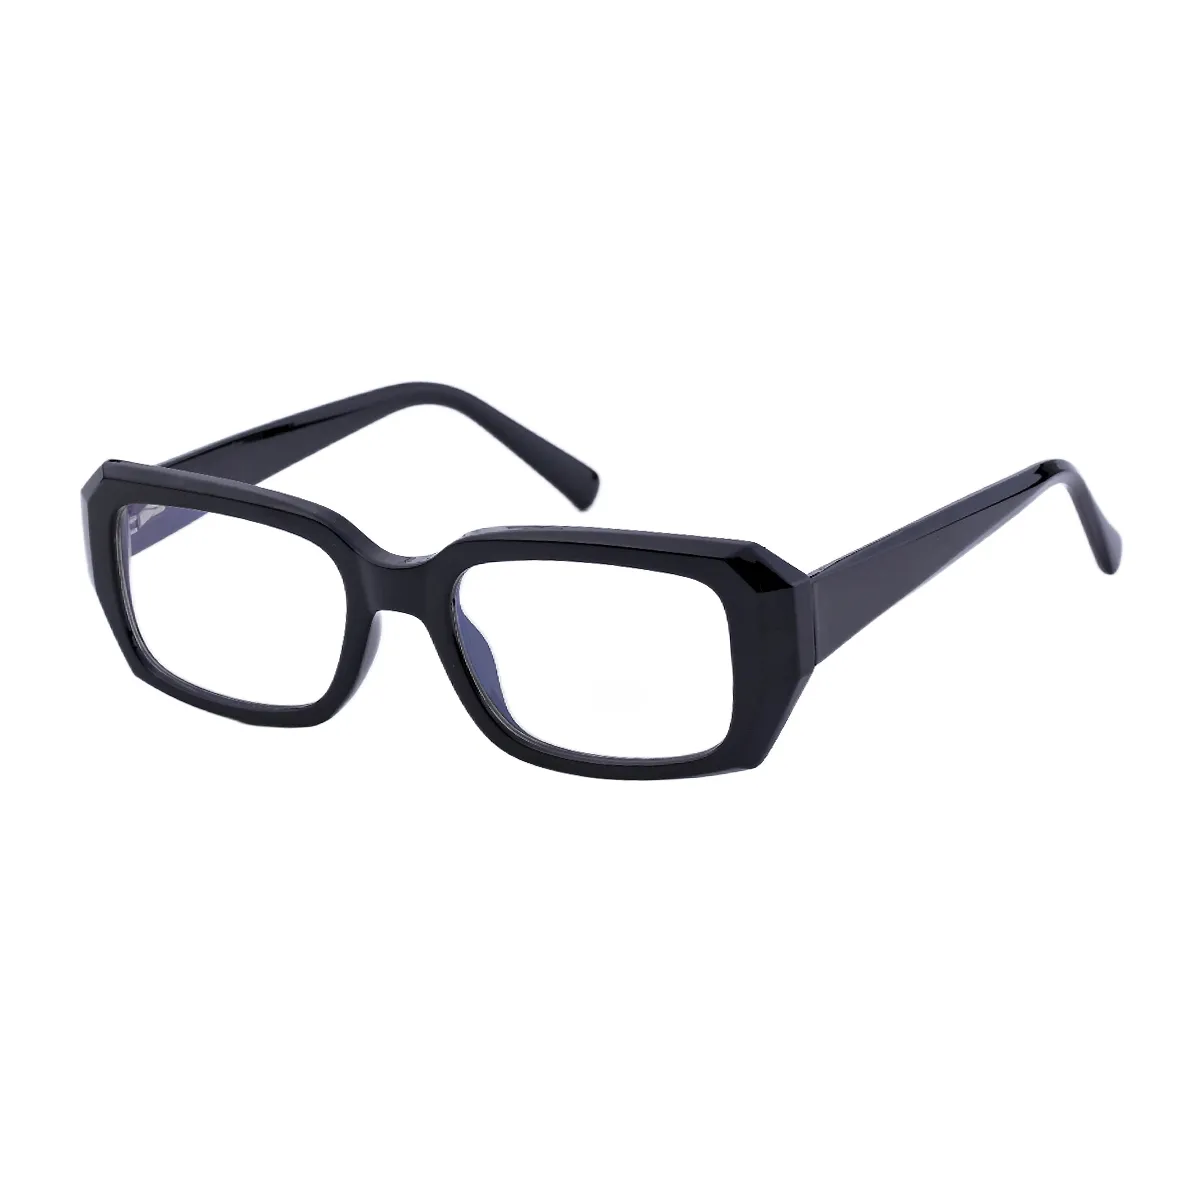 Hermosa - Rectangle Black Glasses for Women